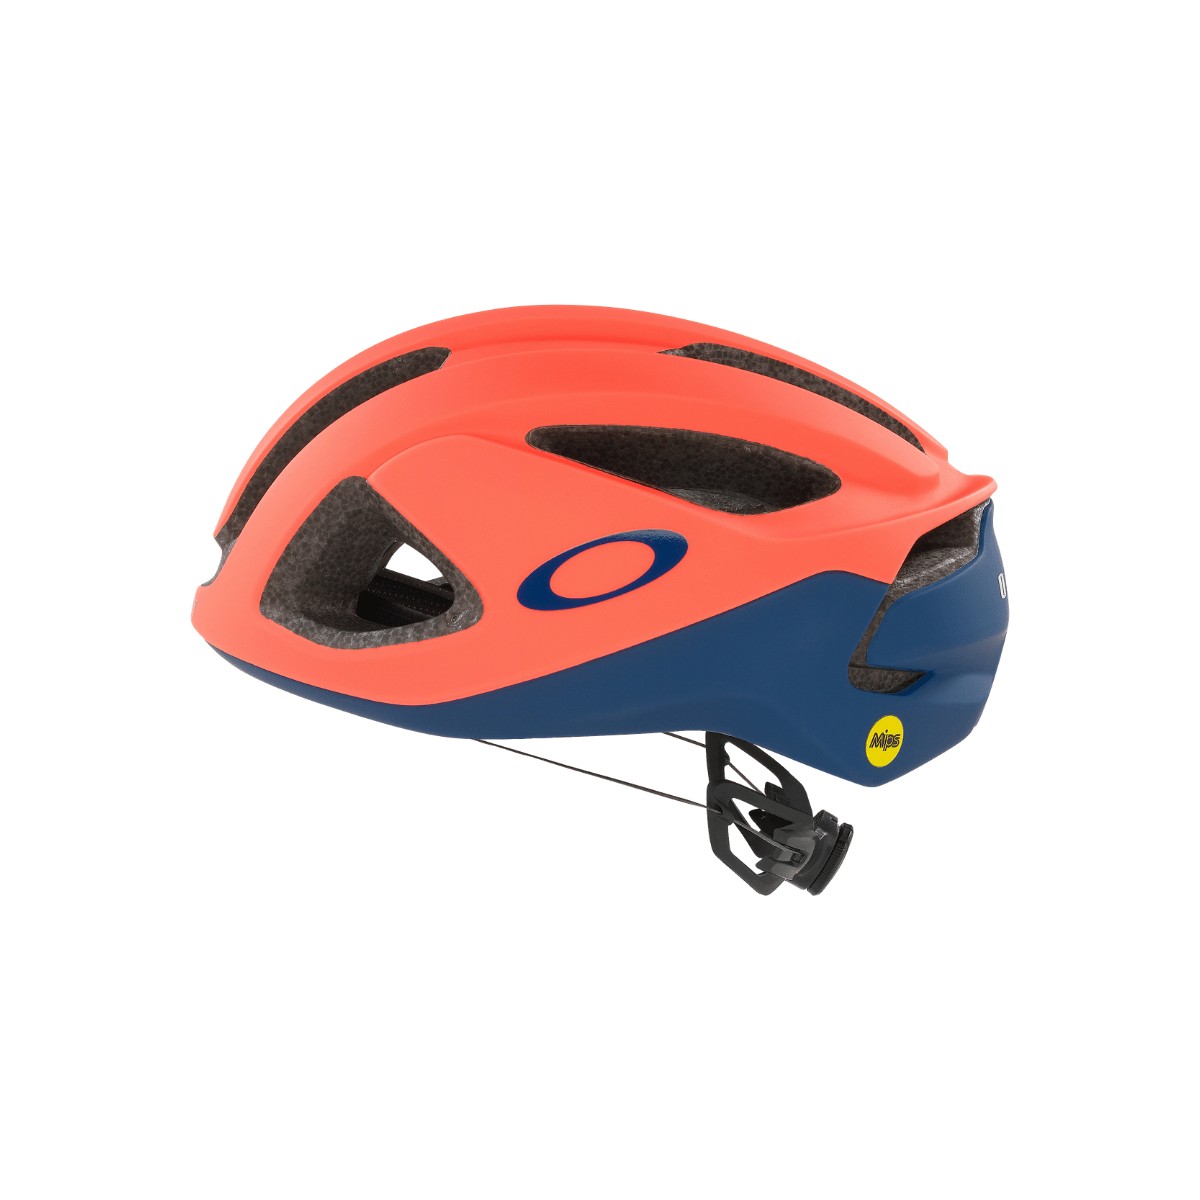 Oakley ARO3 MIPS Tour de France 2021 Helmet, Size M (54-58 cm)